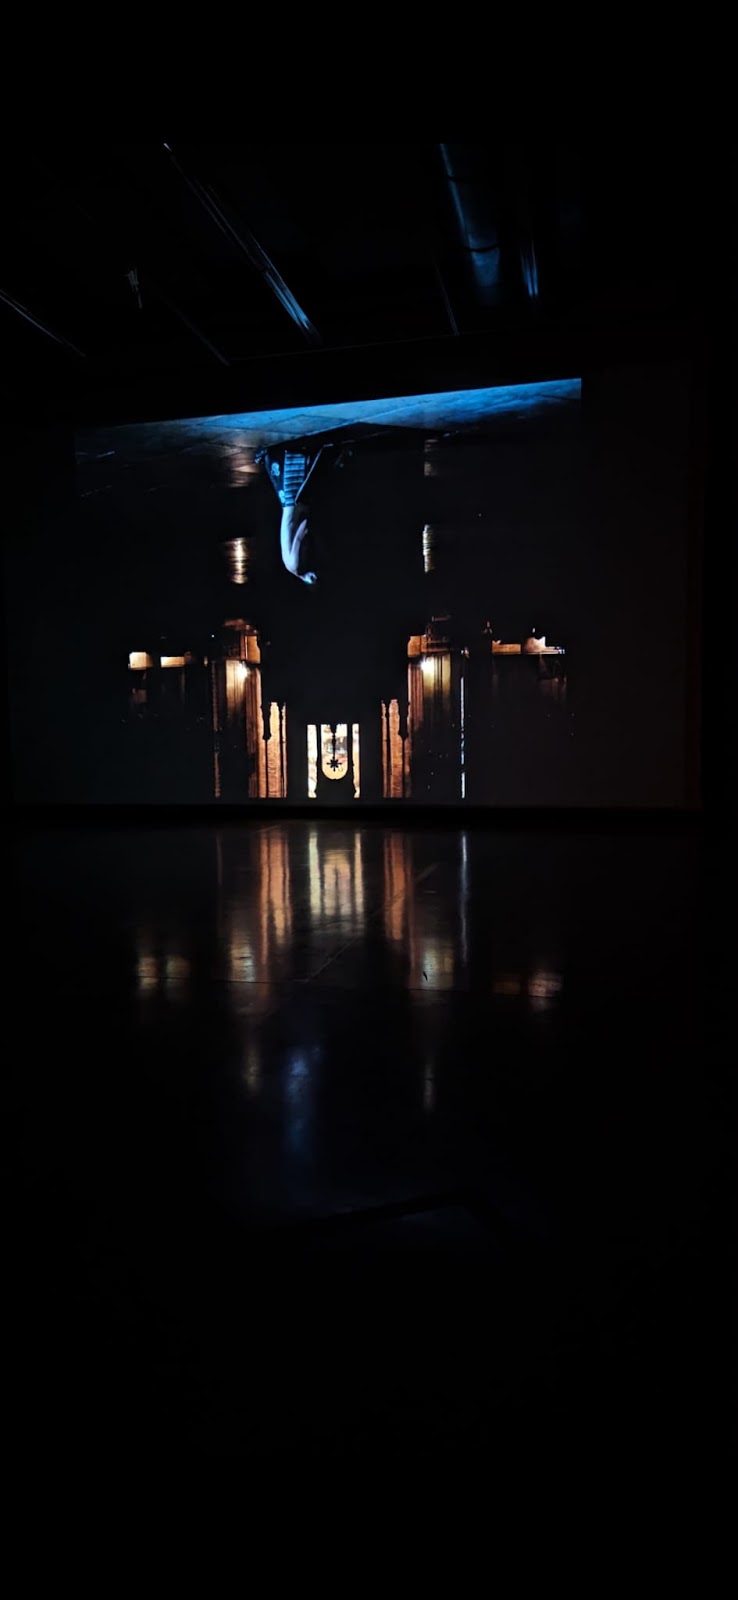 l'image présente Boris Charmatz dans l'église présentée à l'envers. Le choeur de l'édifice est ainsi visible la tête en bas comme le danseur.